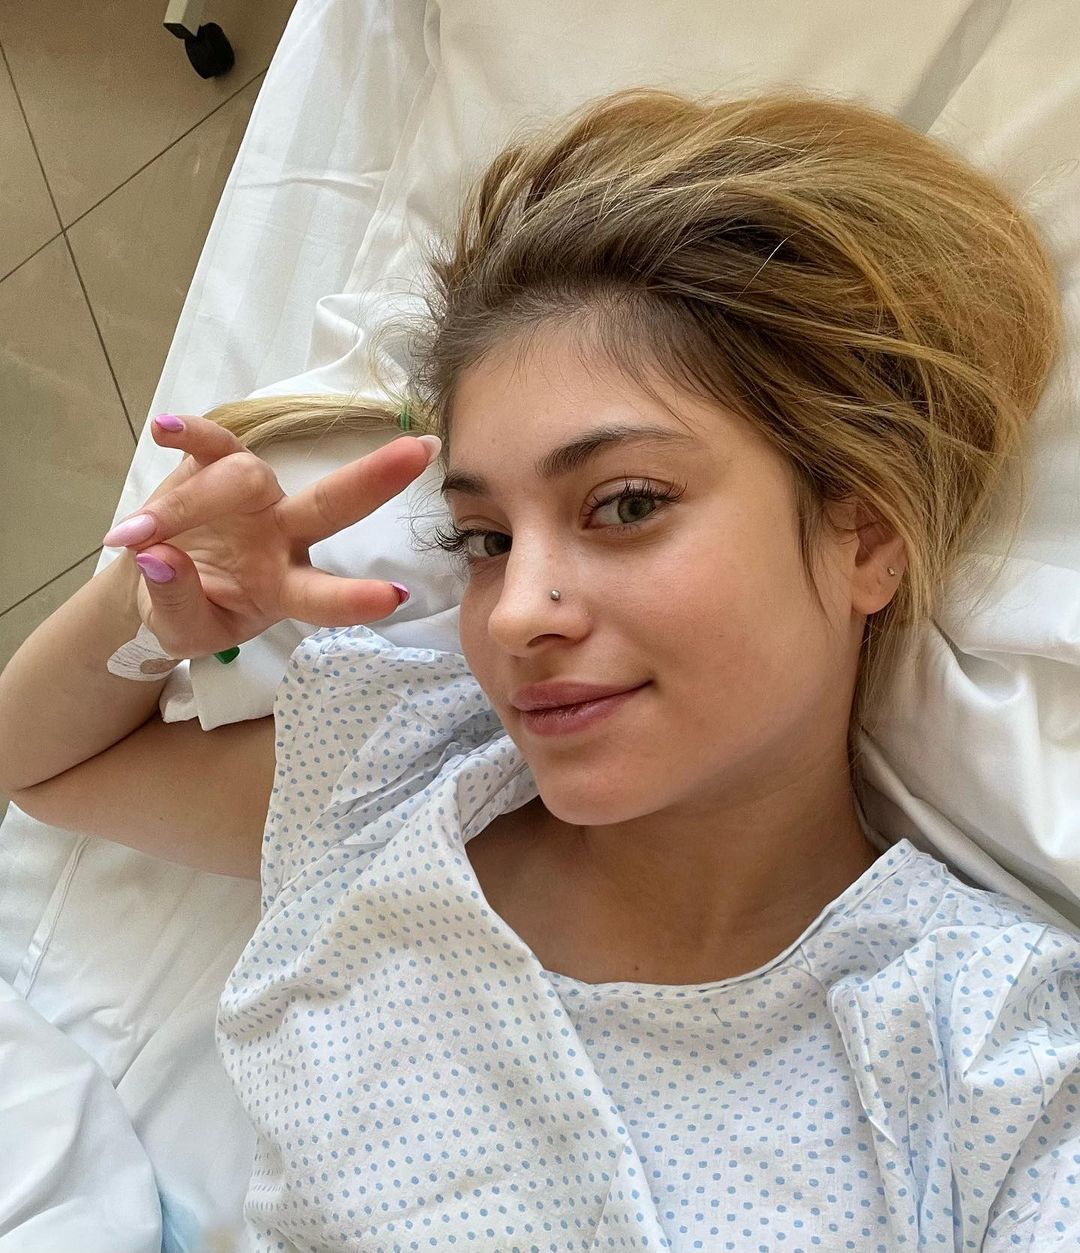 Дана Борисова в палате психиатрической клиники из-за острого обострения, Алене Косторной сделали сложную операцию на бедре